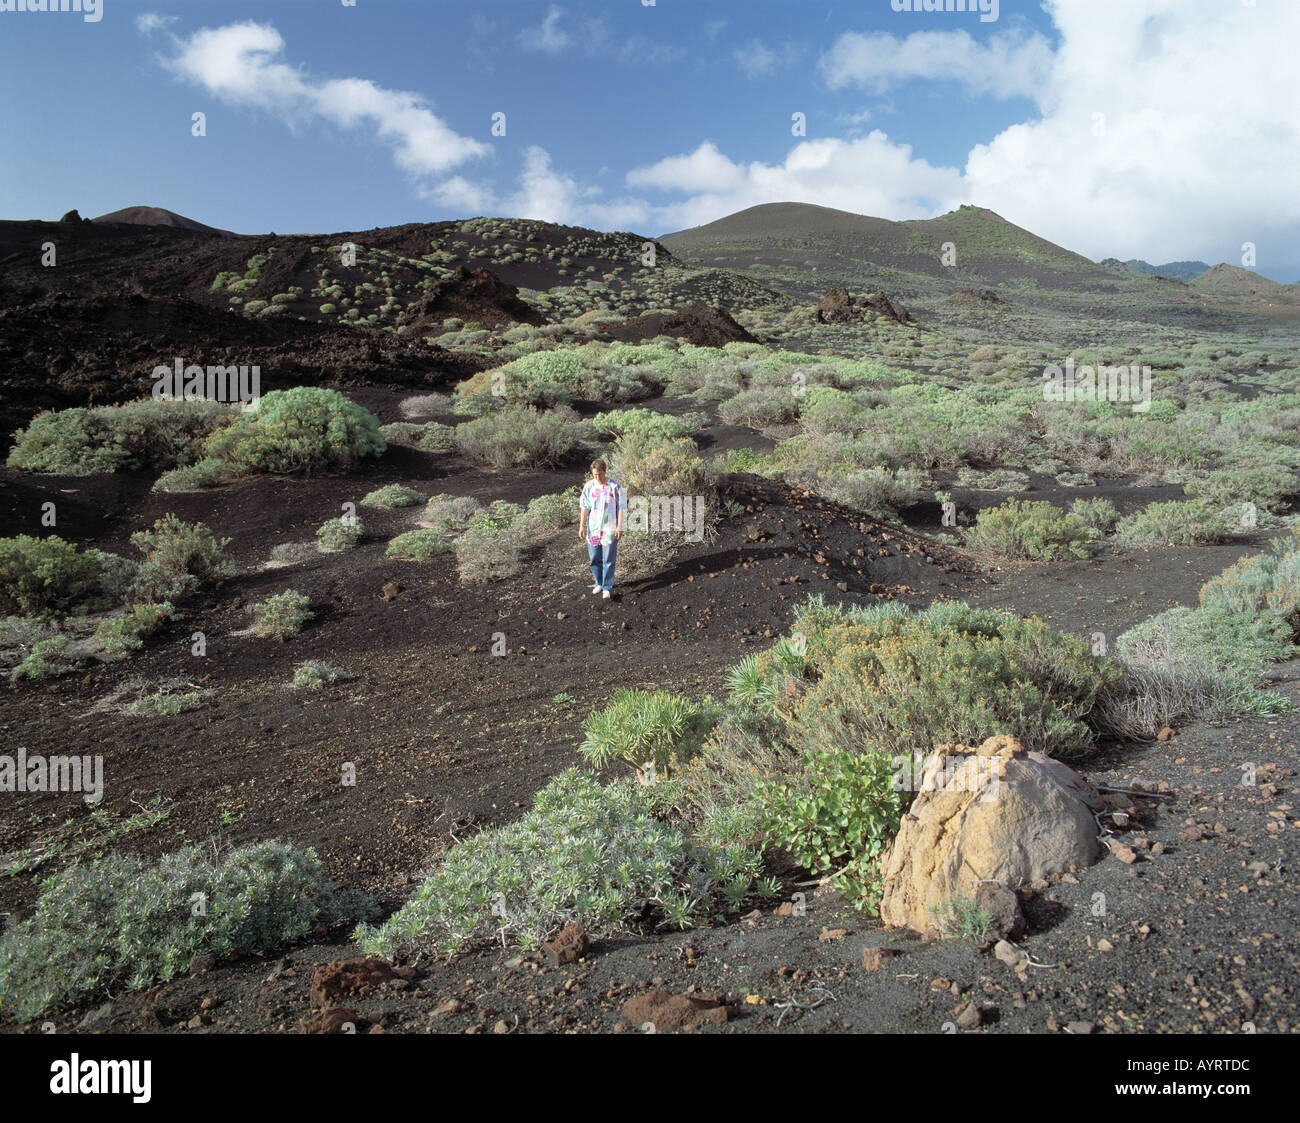 Vulkan Teneguia, Vulkanlandschaft, Gewaechse auf Lavaasche, junge Frau spaziert durch Vulkanlandschaft, Fuencaliente, La Palma, KANARISCHE INSELN Foto de stock